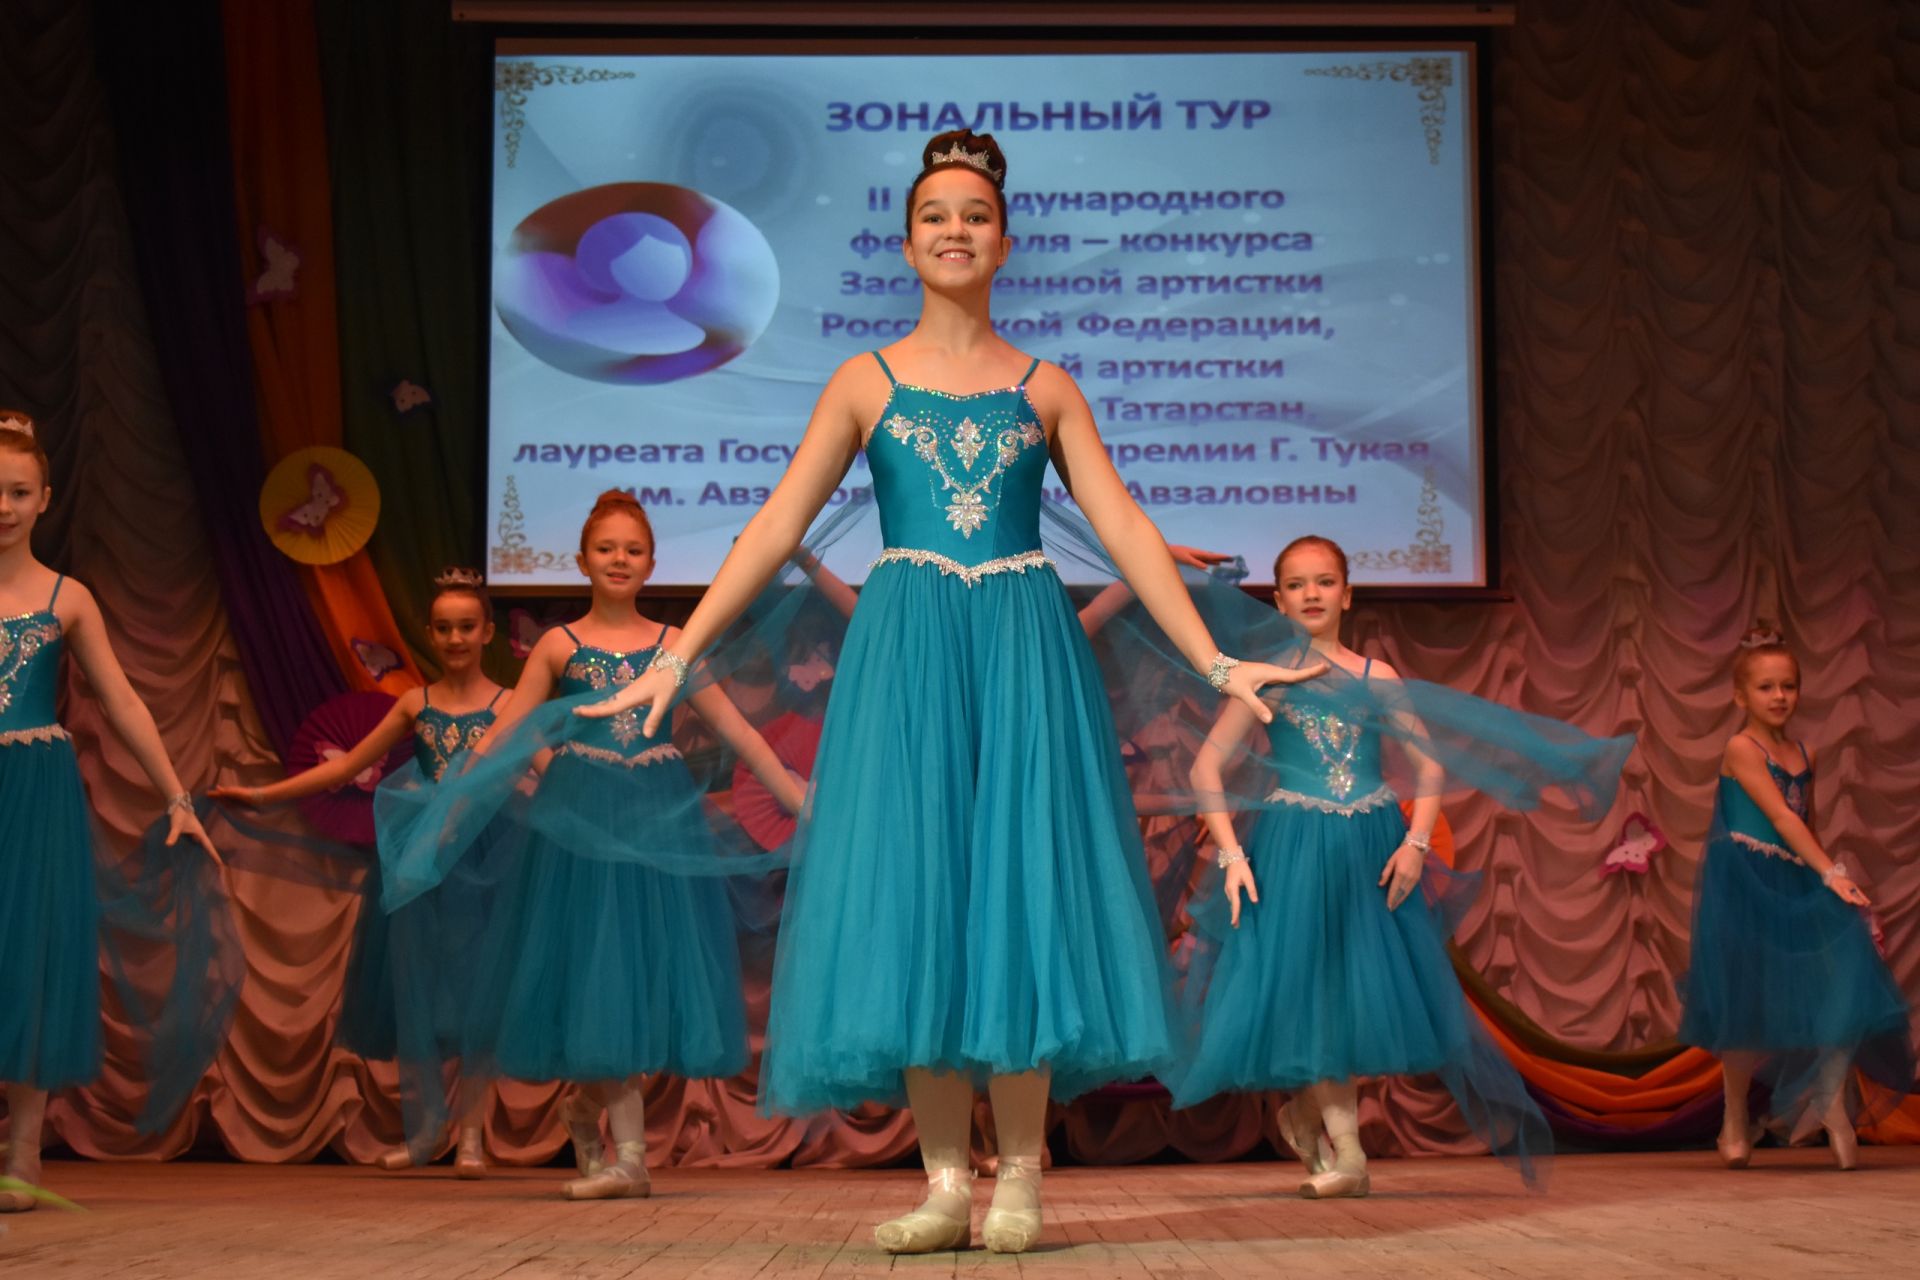 В Пестрецах прошел отборочный этап зонального тура II Международного фестиваля - конкурса имени Альфии Авзаловой